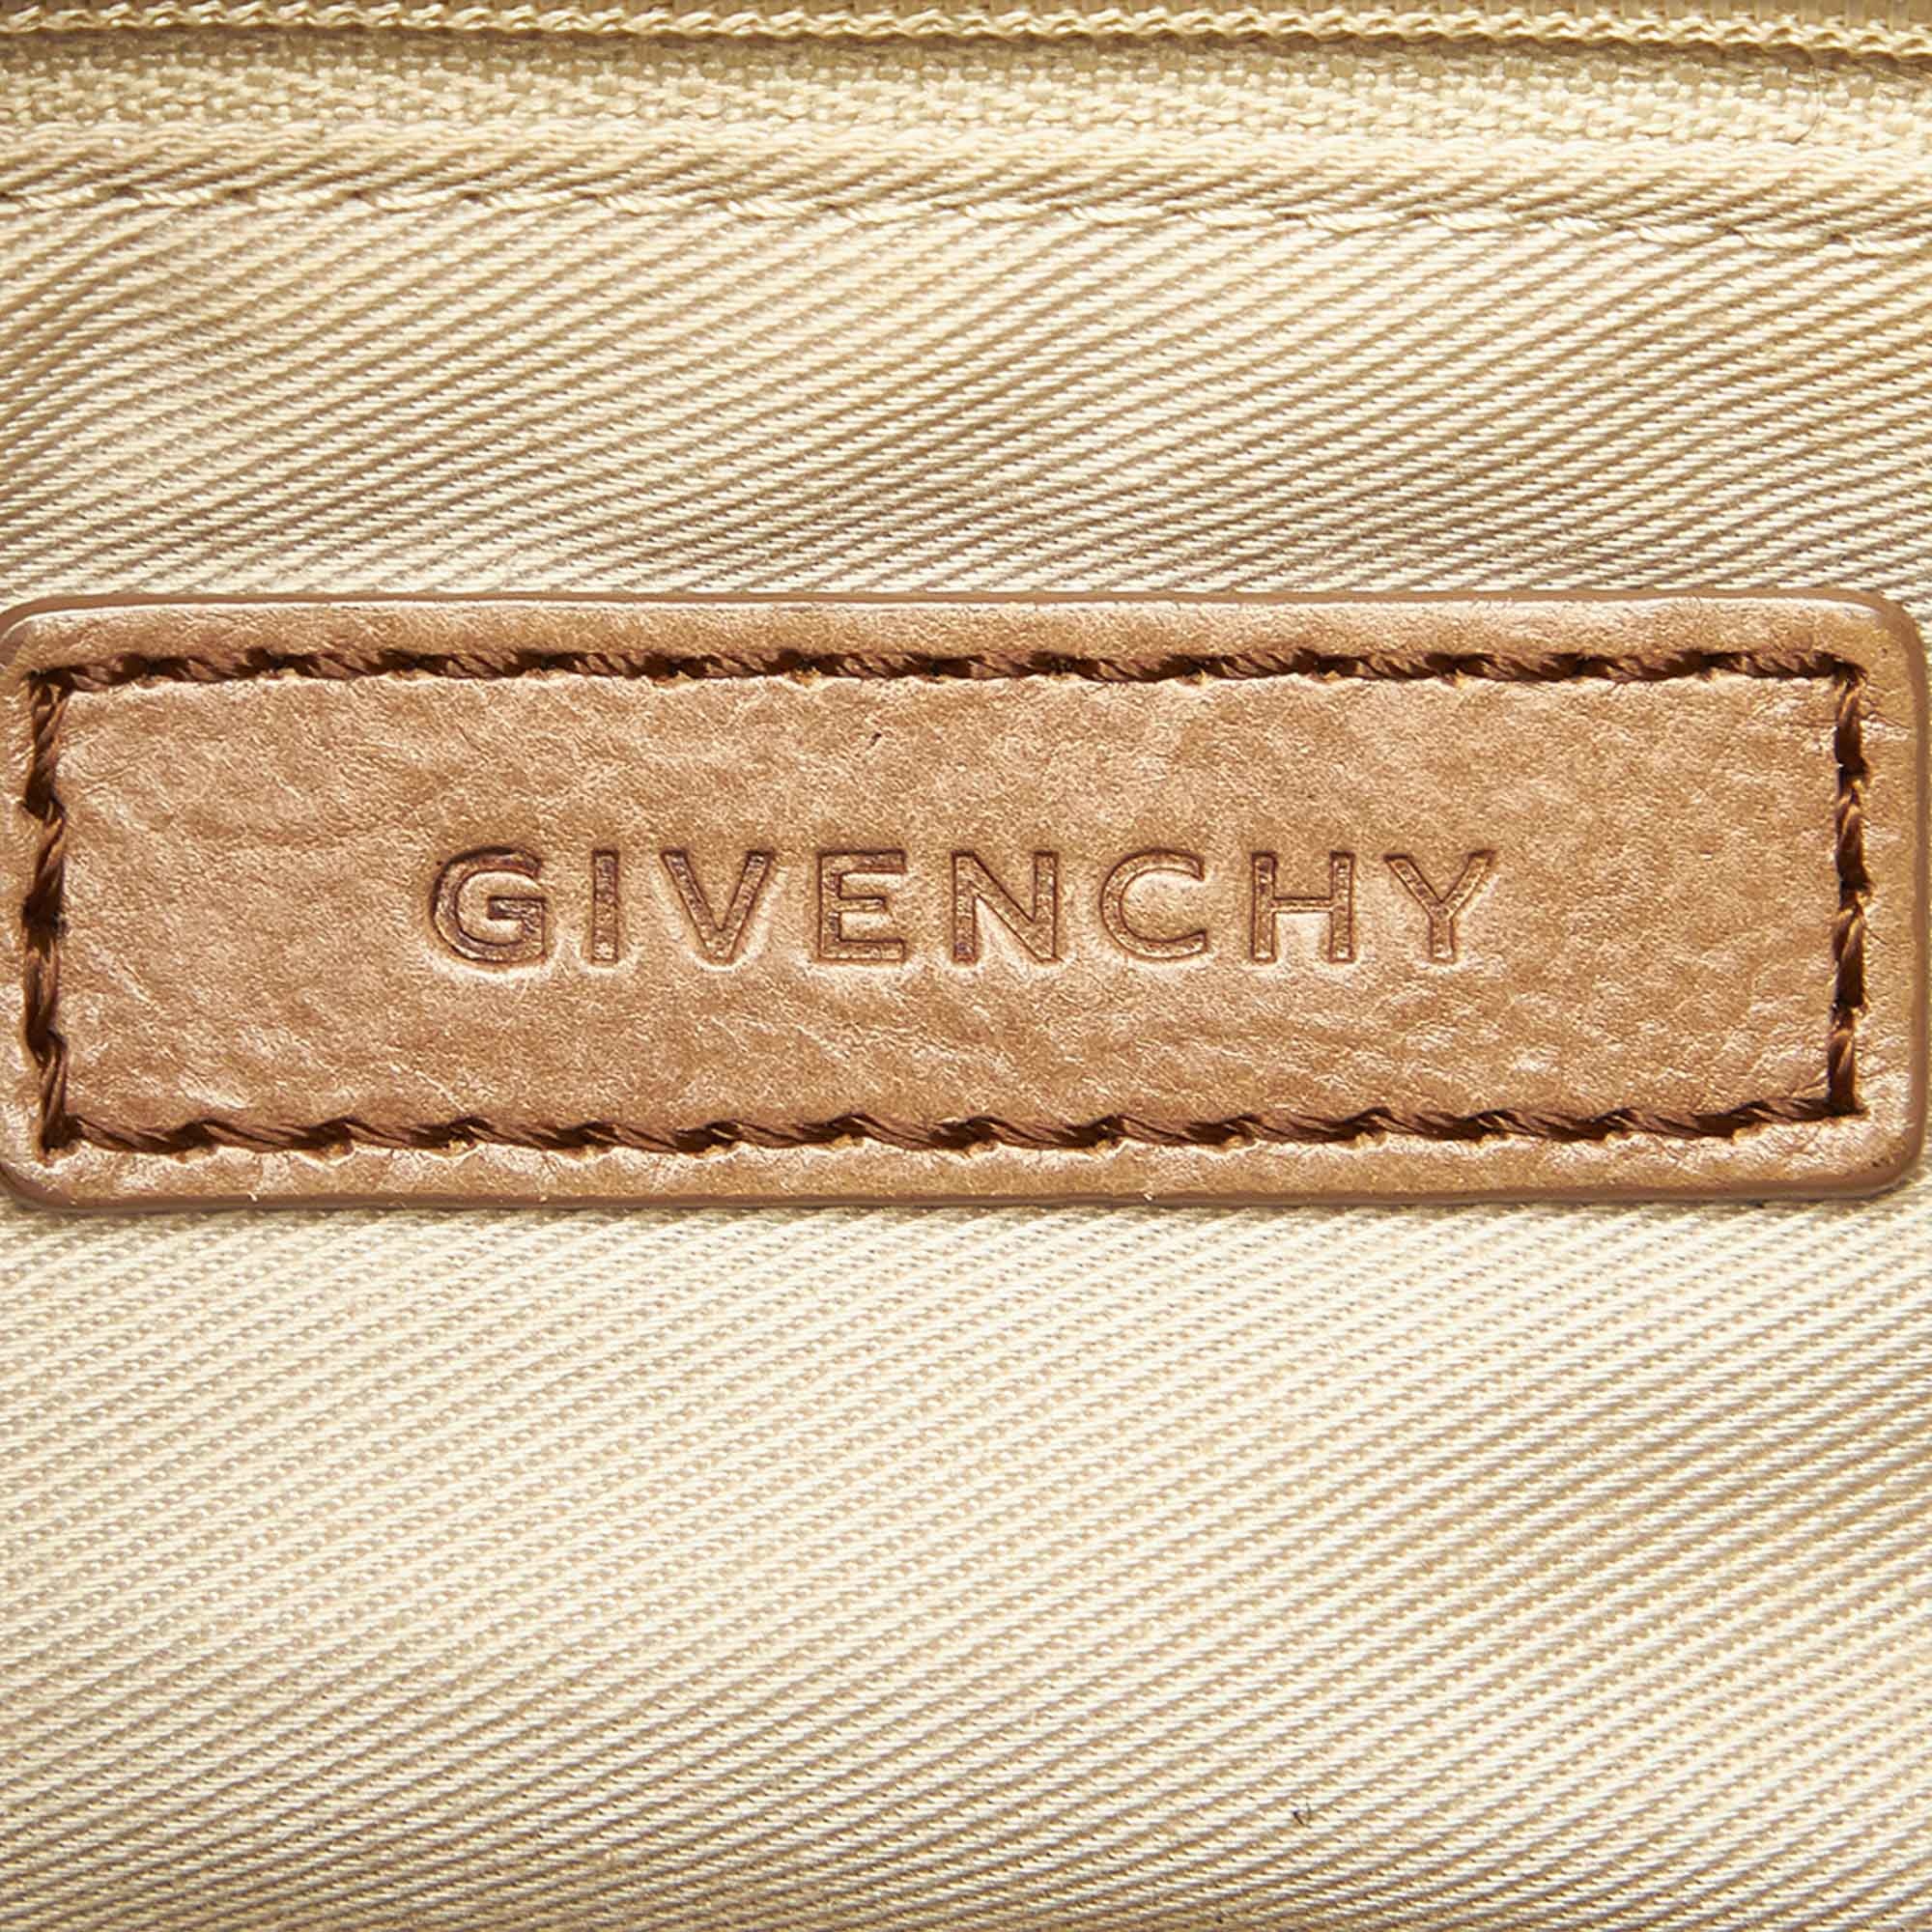 Vintage Givenchy Handbag  Givenchy handbags, Vintage givenchy